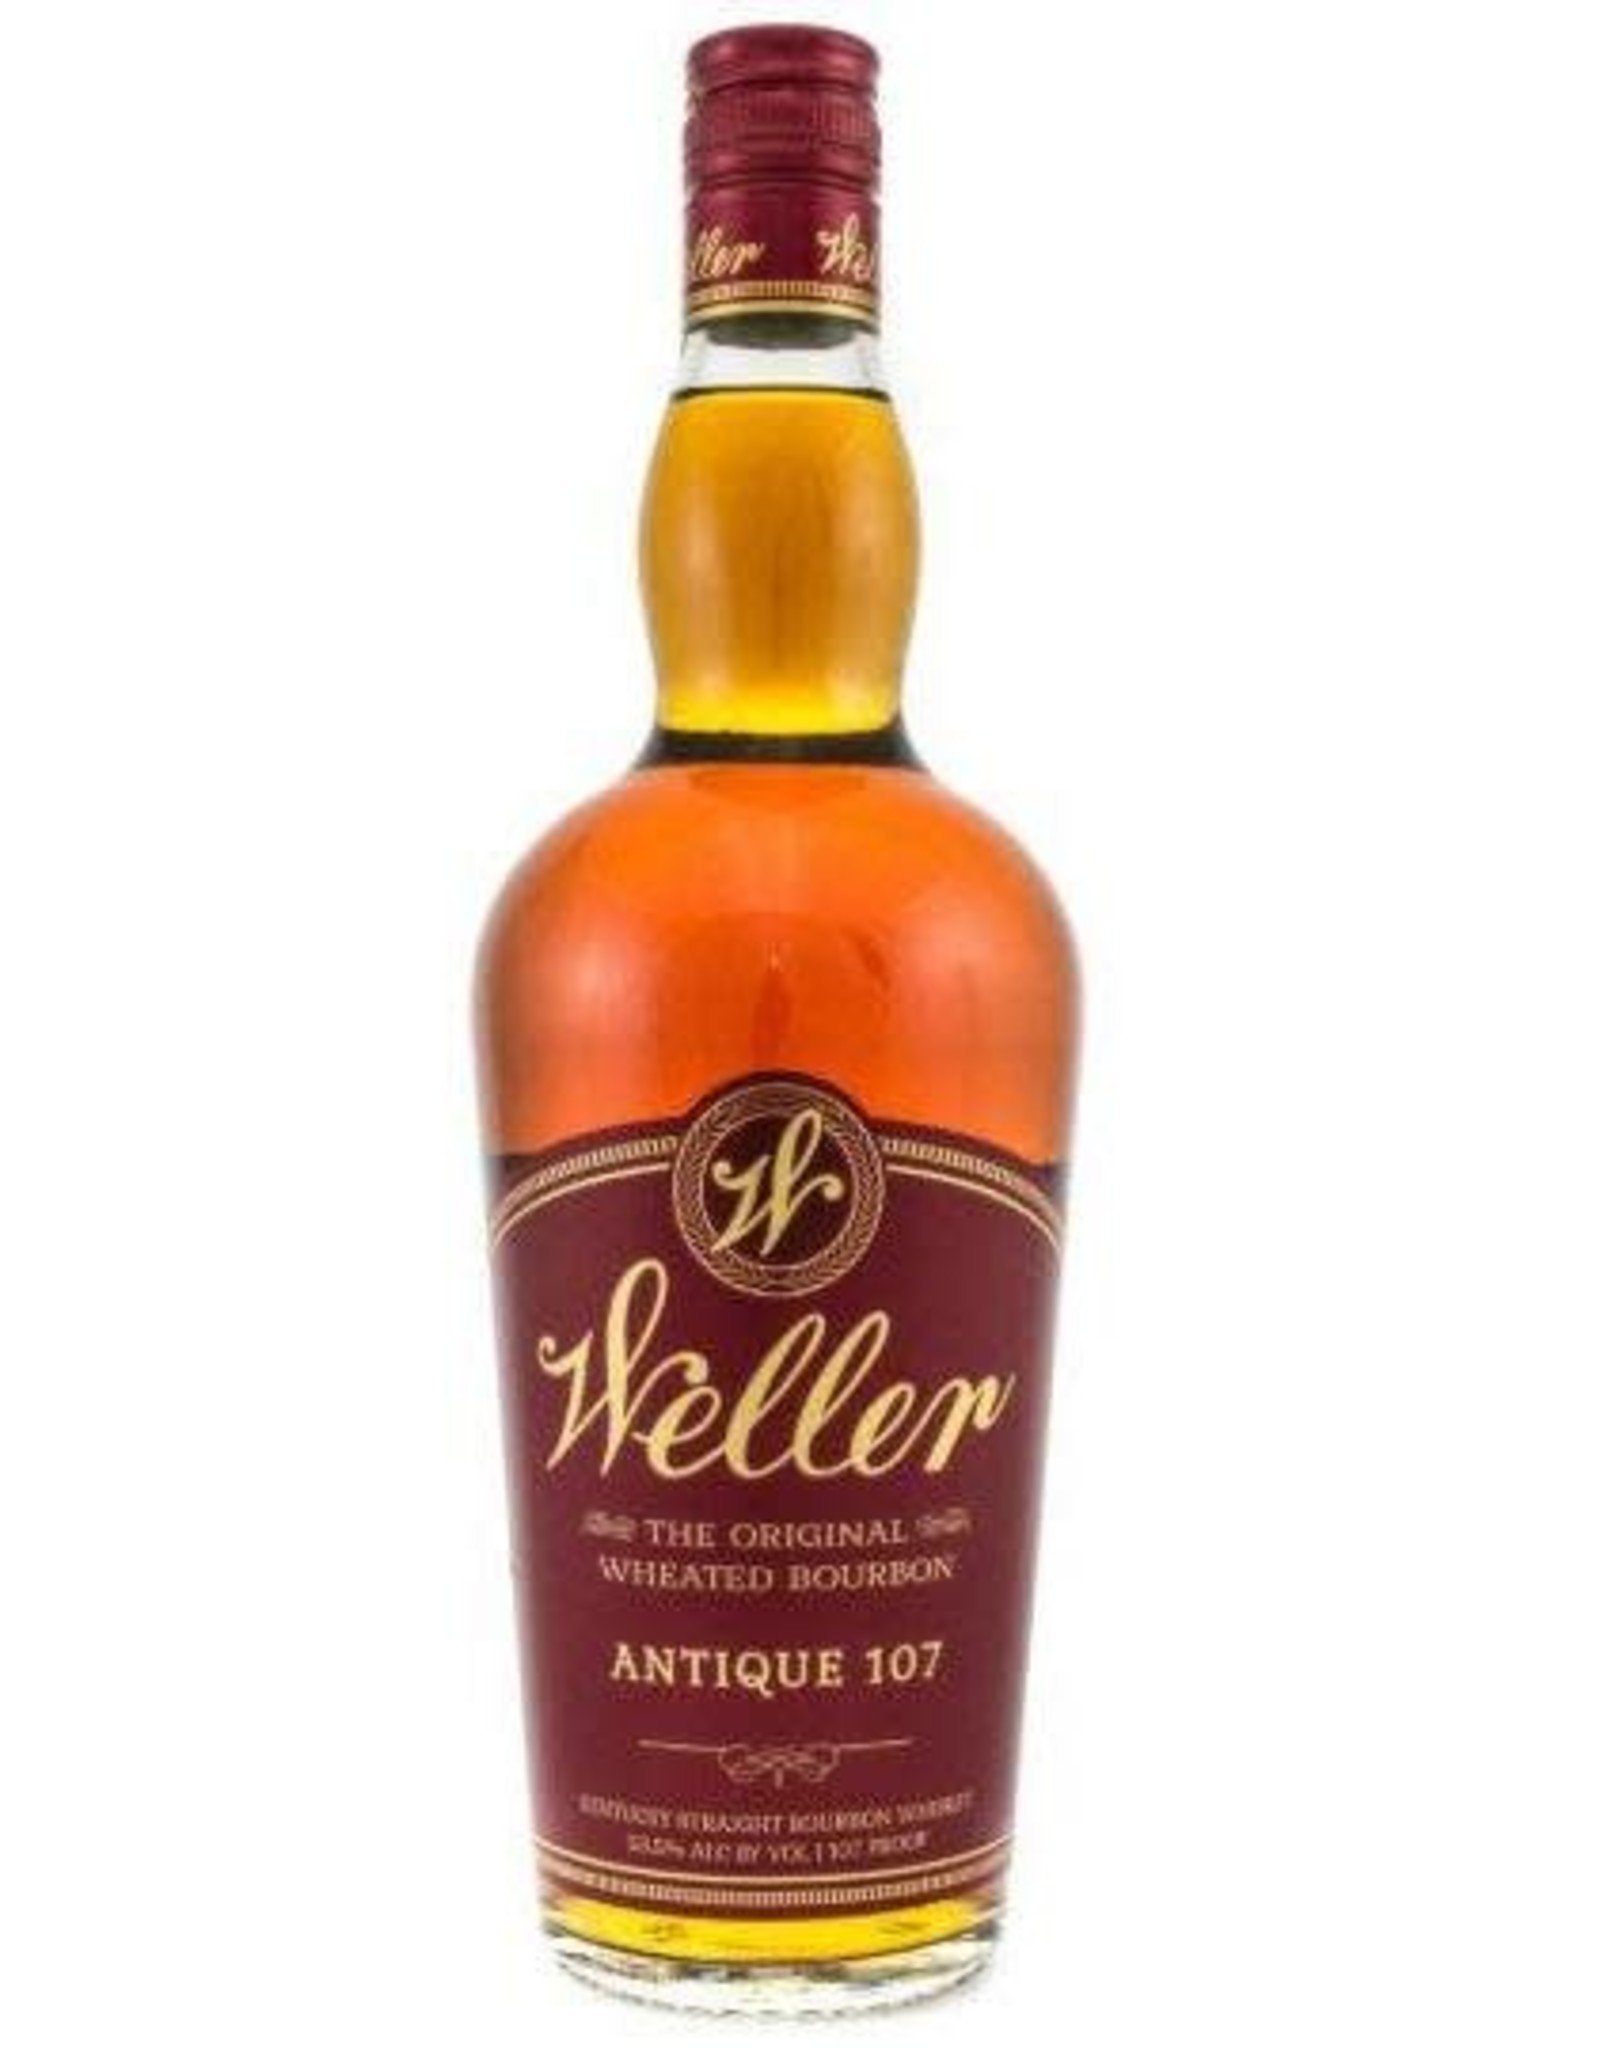 Wl Weller WI  Weller 107 Bourbon 750mL